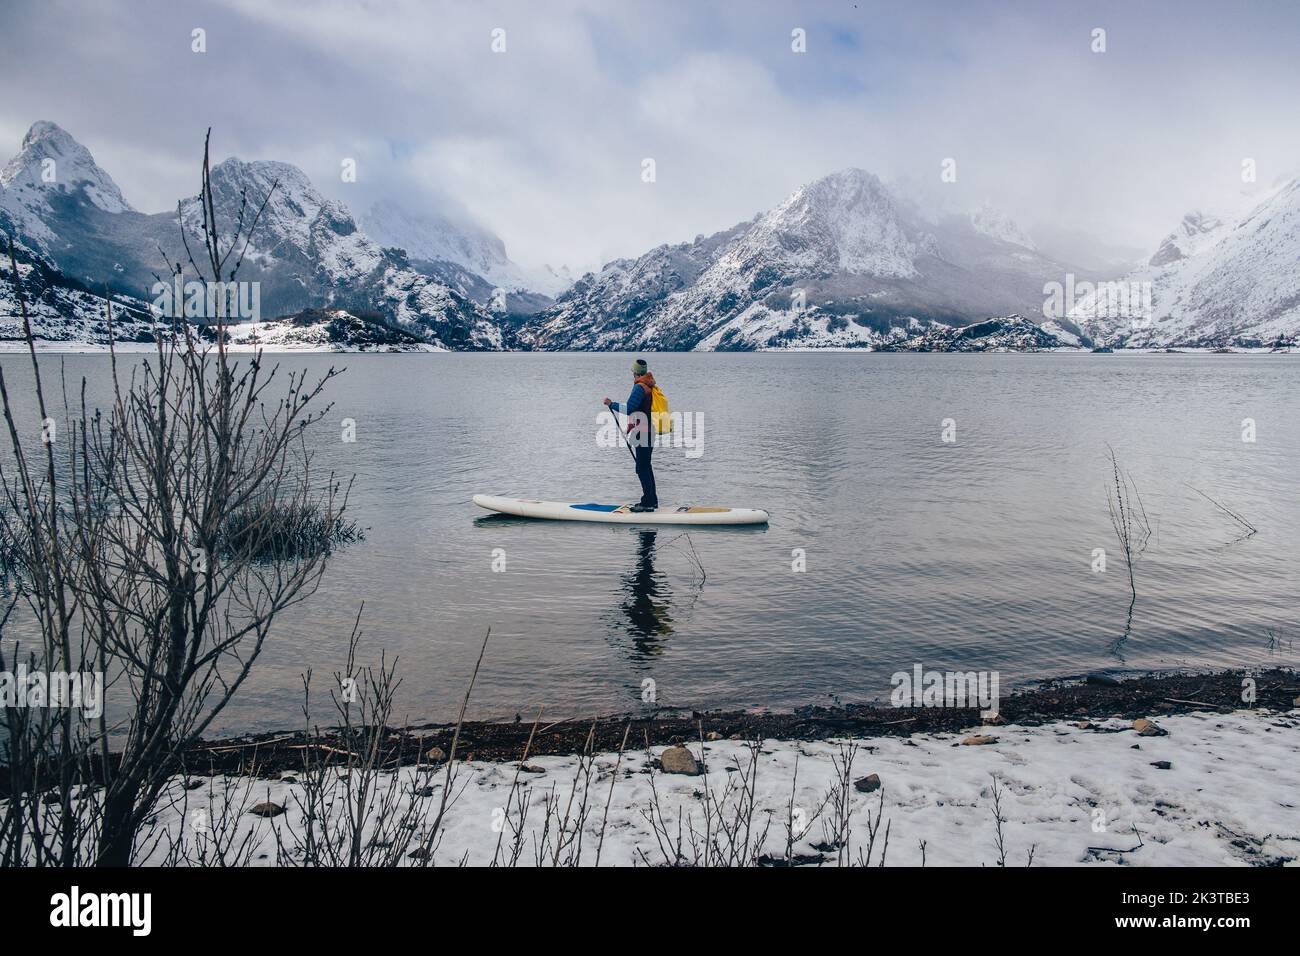 Turista flotando en sup entre la superficie del agua y pintoresca vista de colinas en la nieve Foto de stock